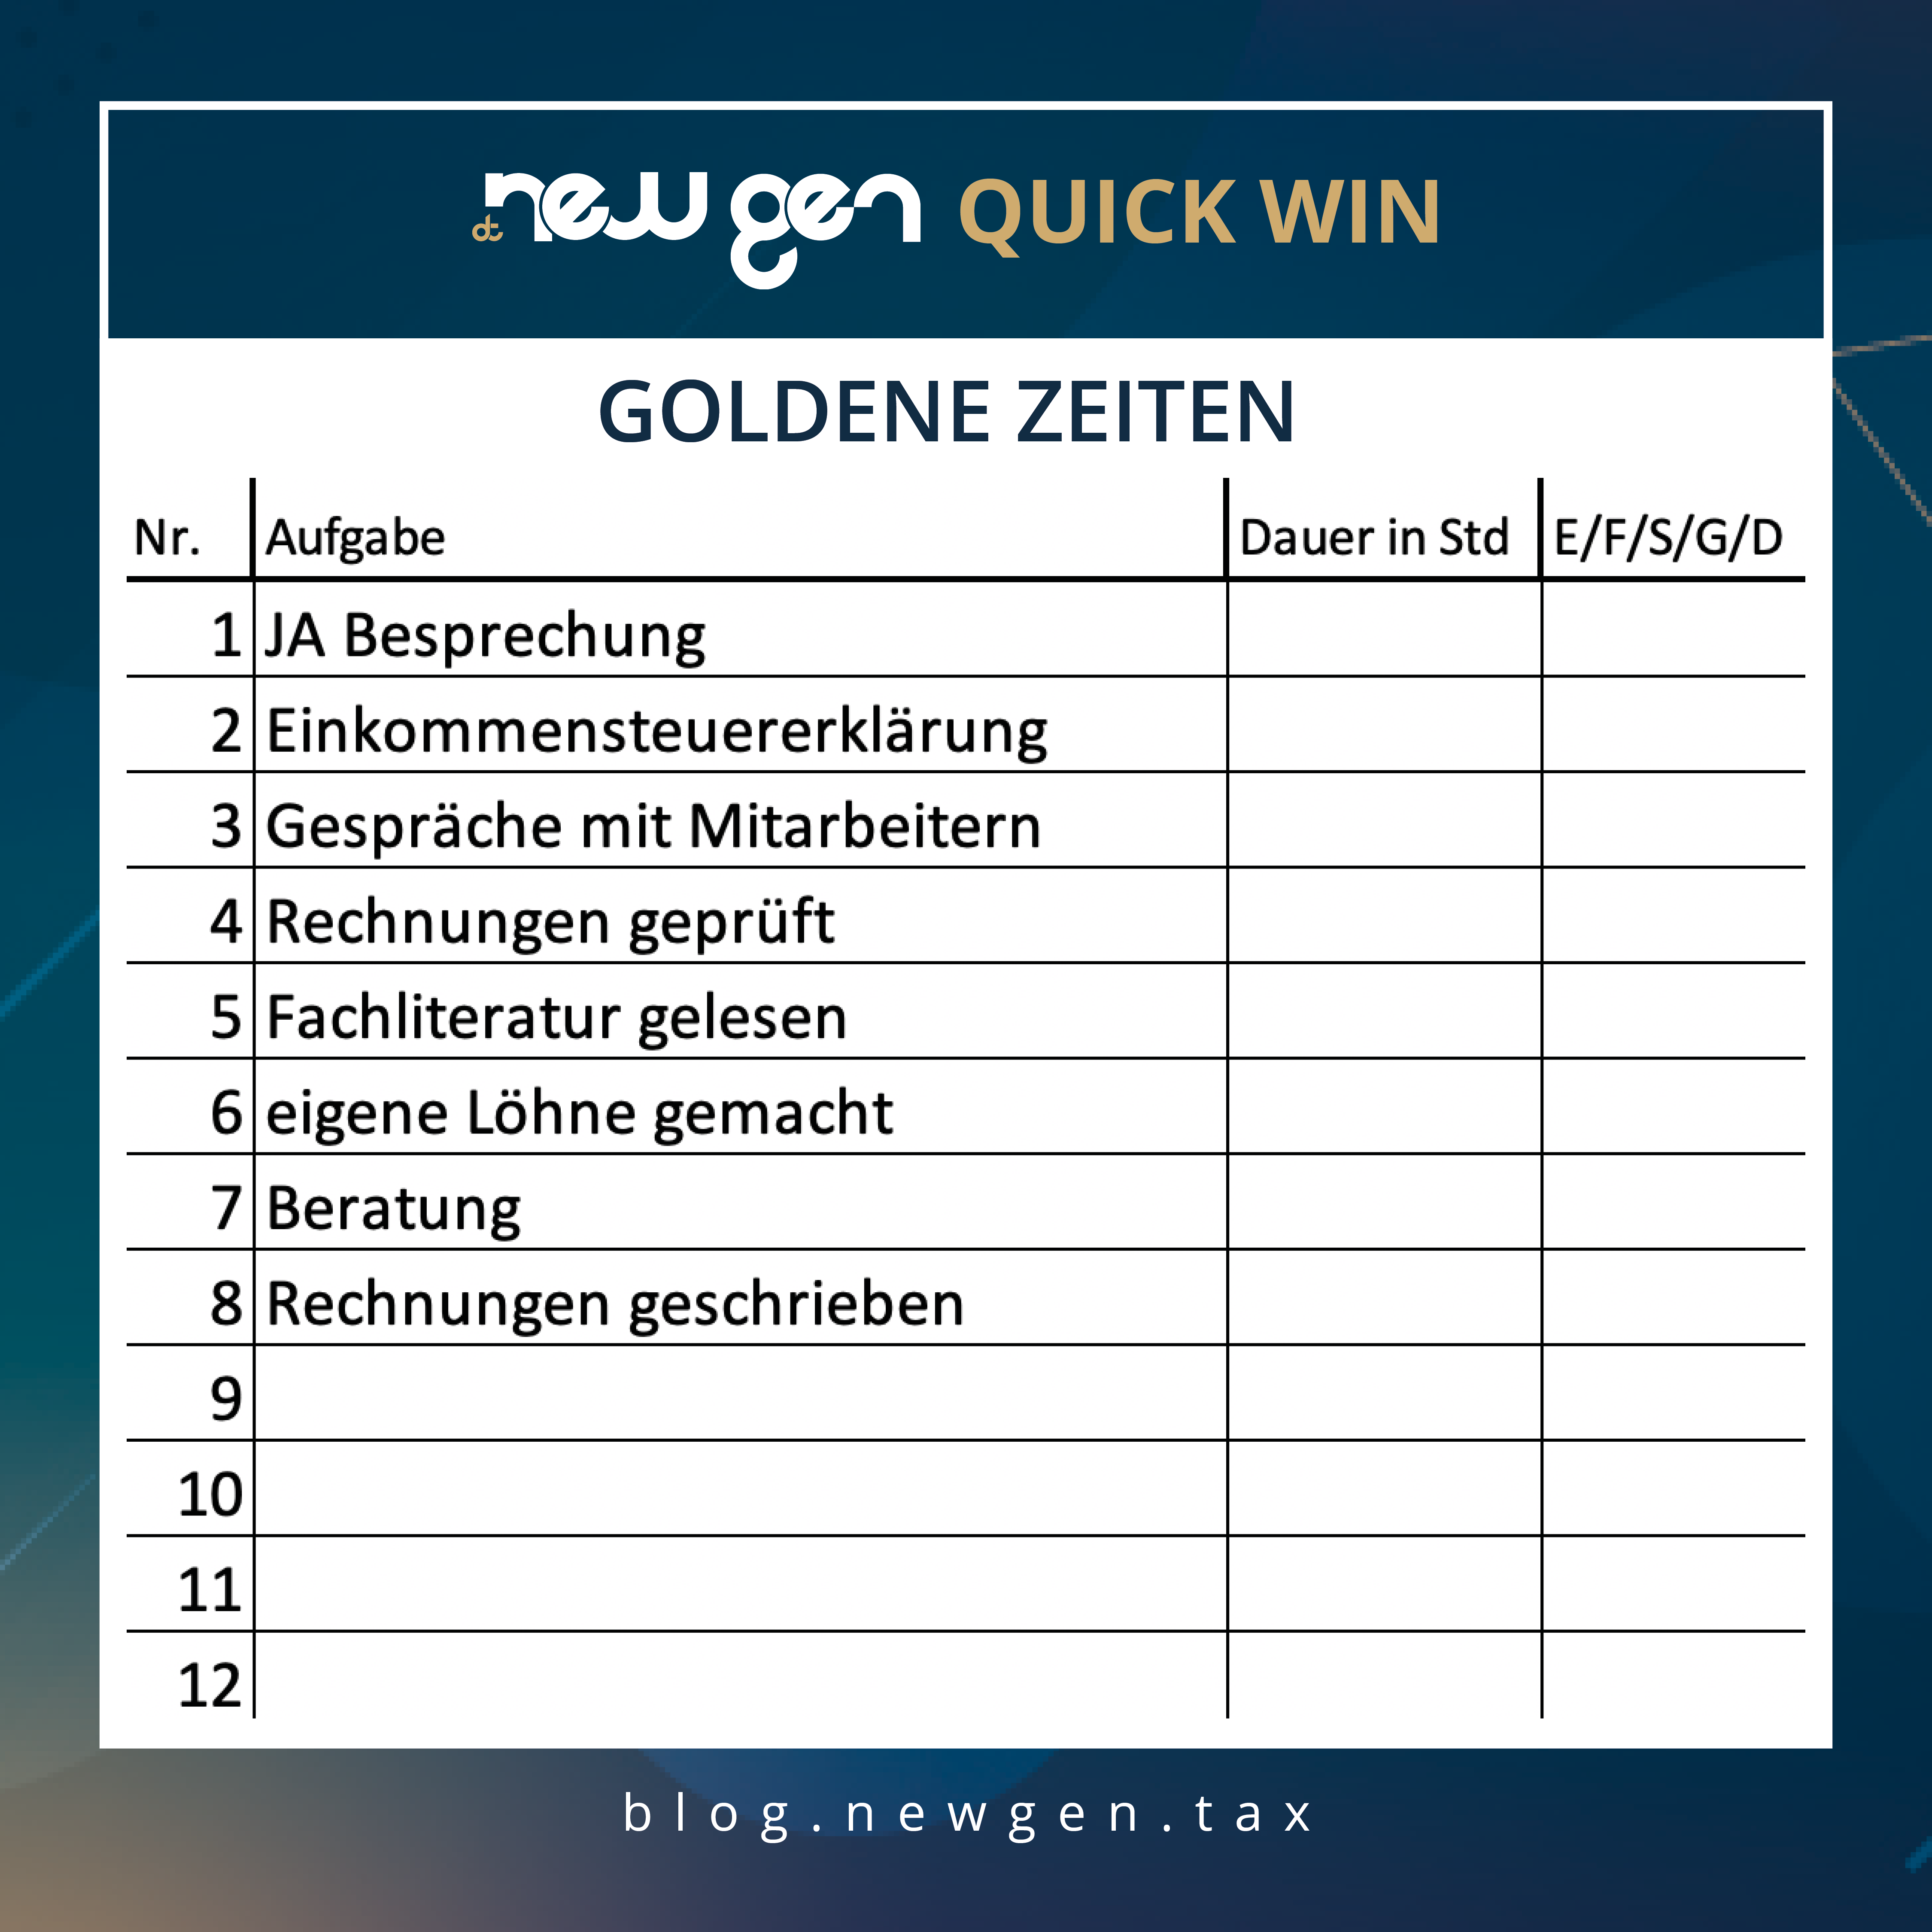 new gen quick win - Goldene Zeiten